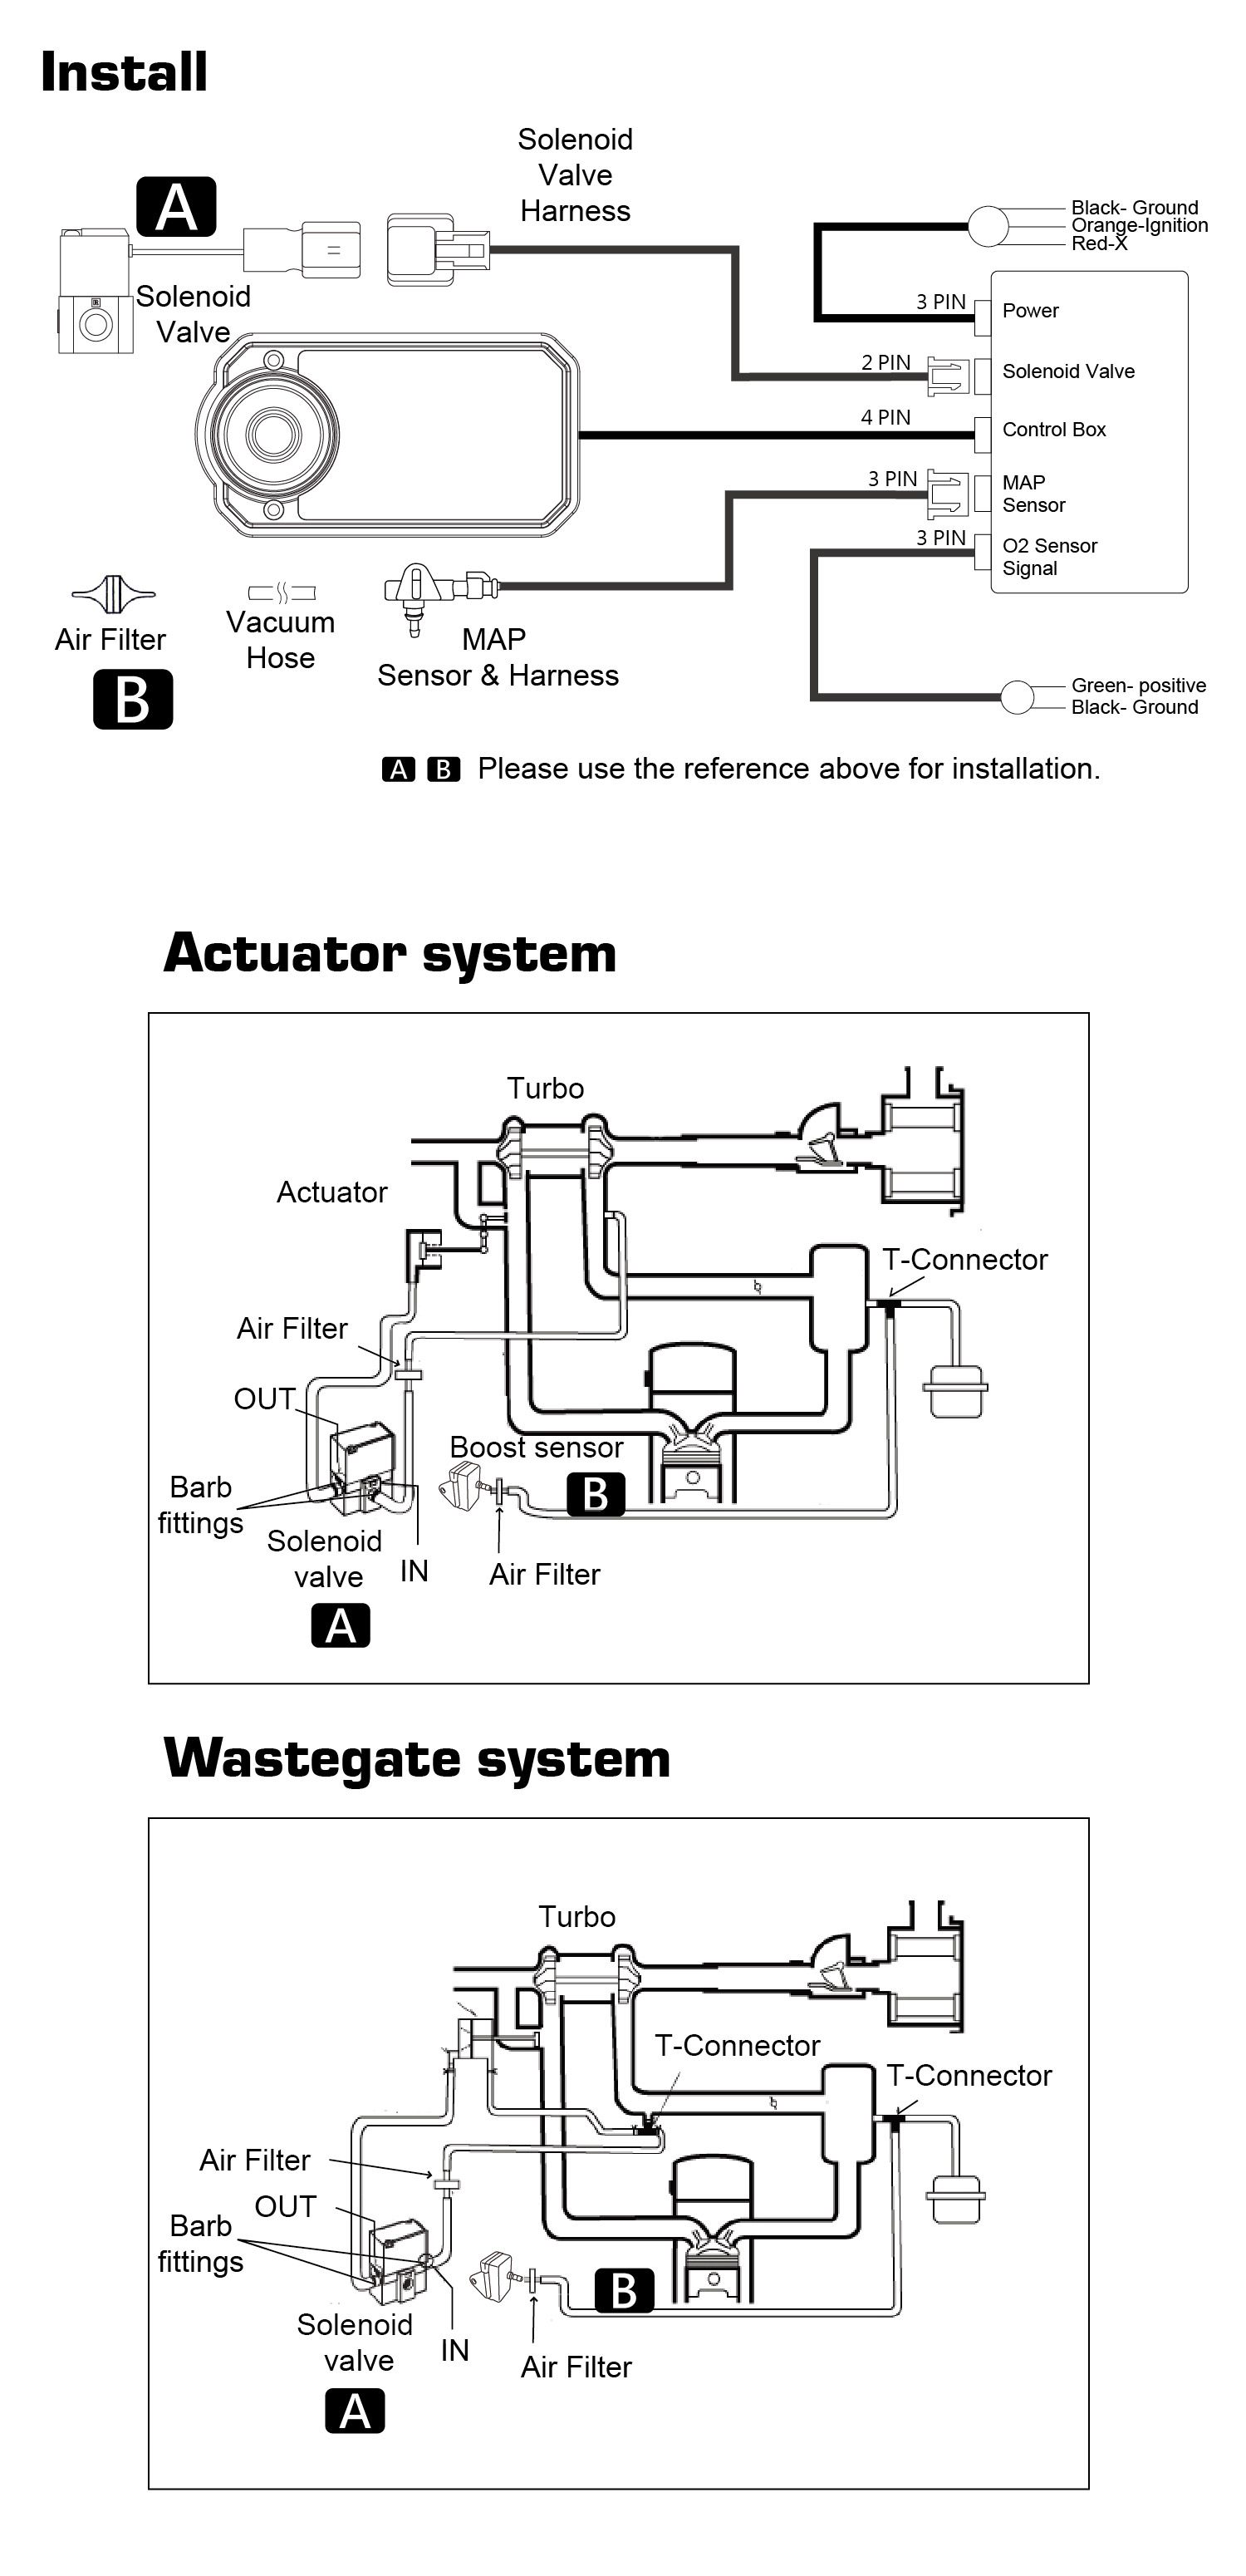 アクチュエーター、ウェイストゲートの2つのシステムに分割されています。